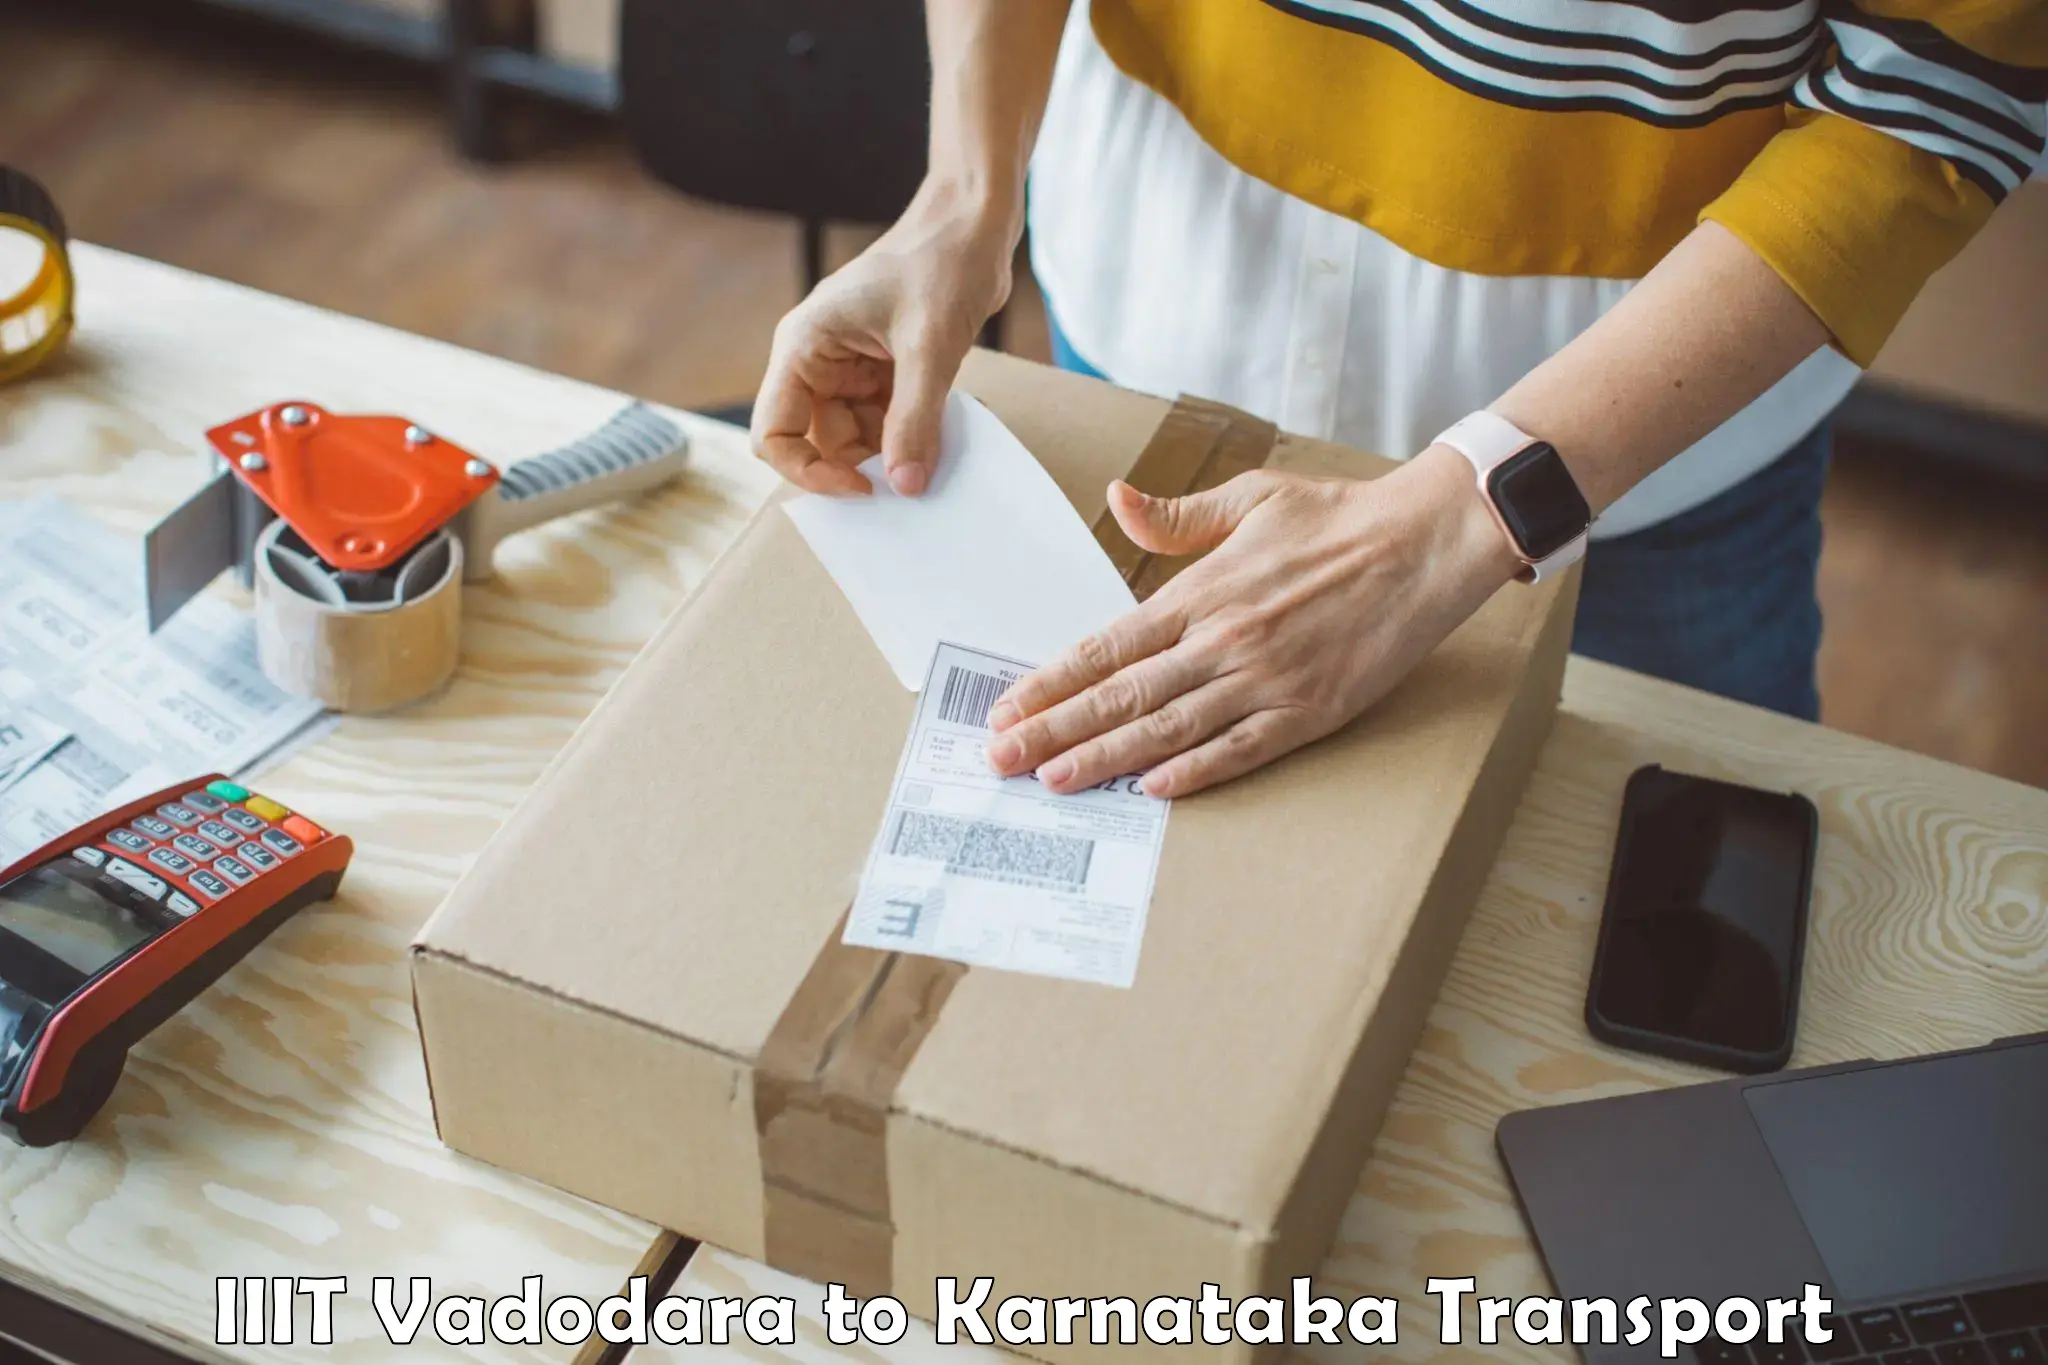 India truck logistics services IIIT Vadodara to Karnataka